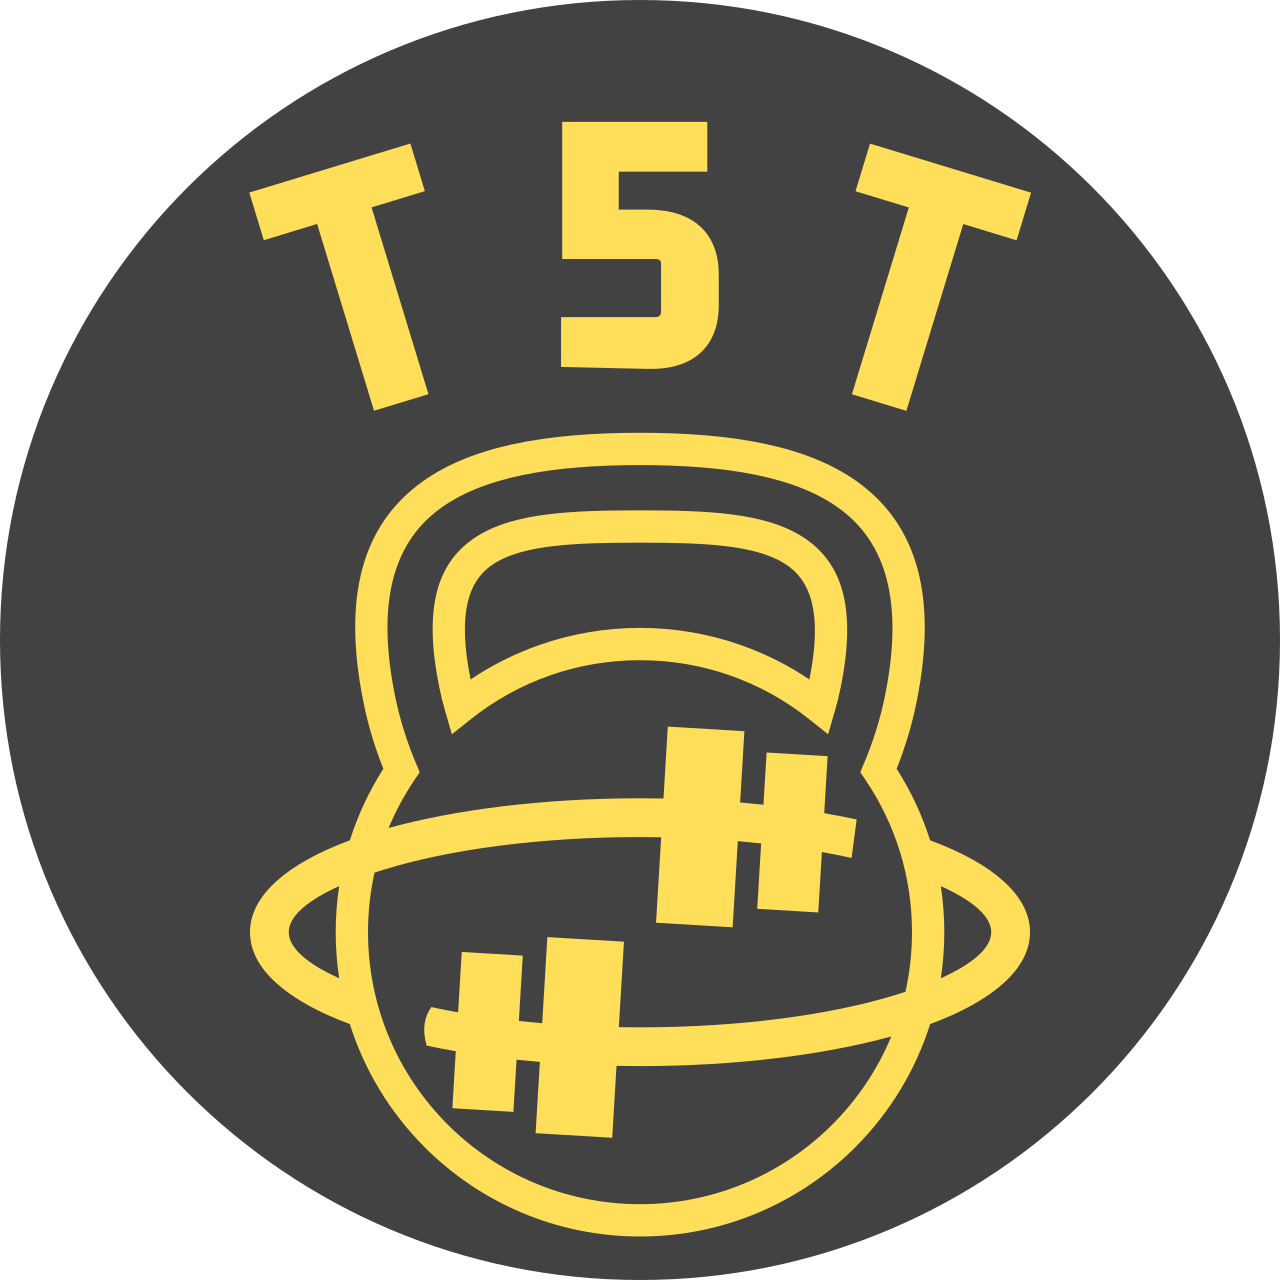 T5T's logo